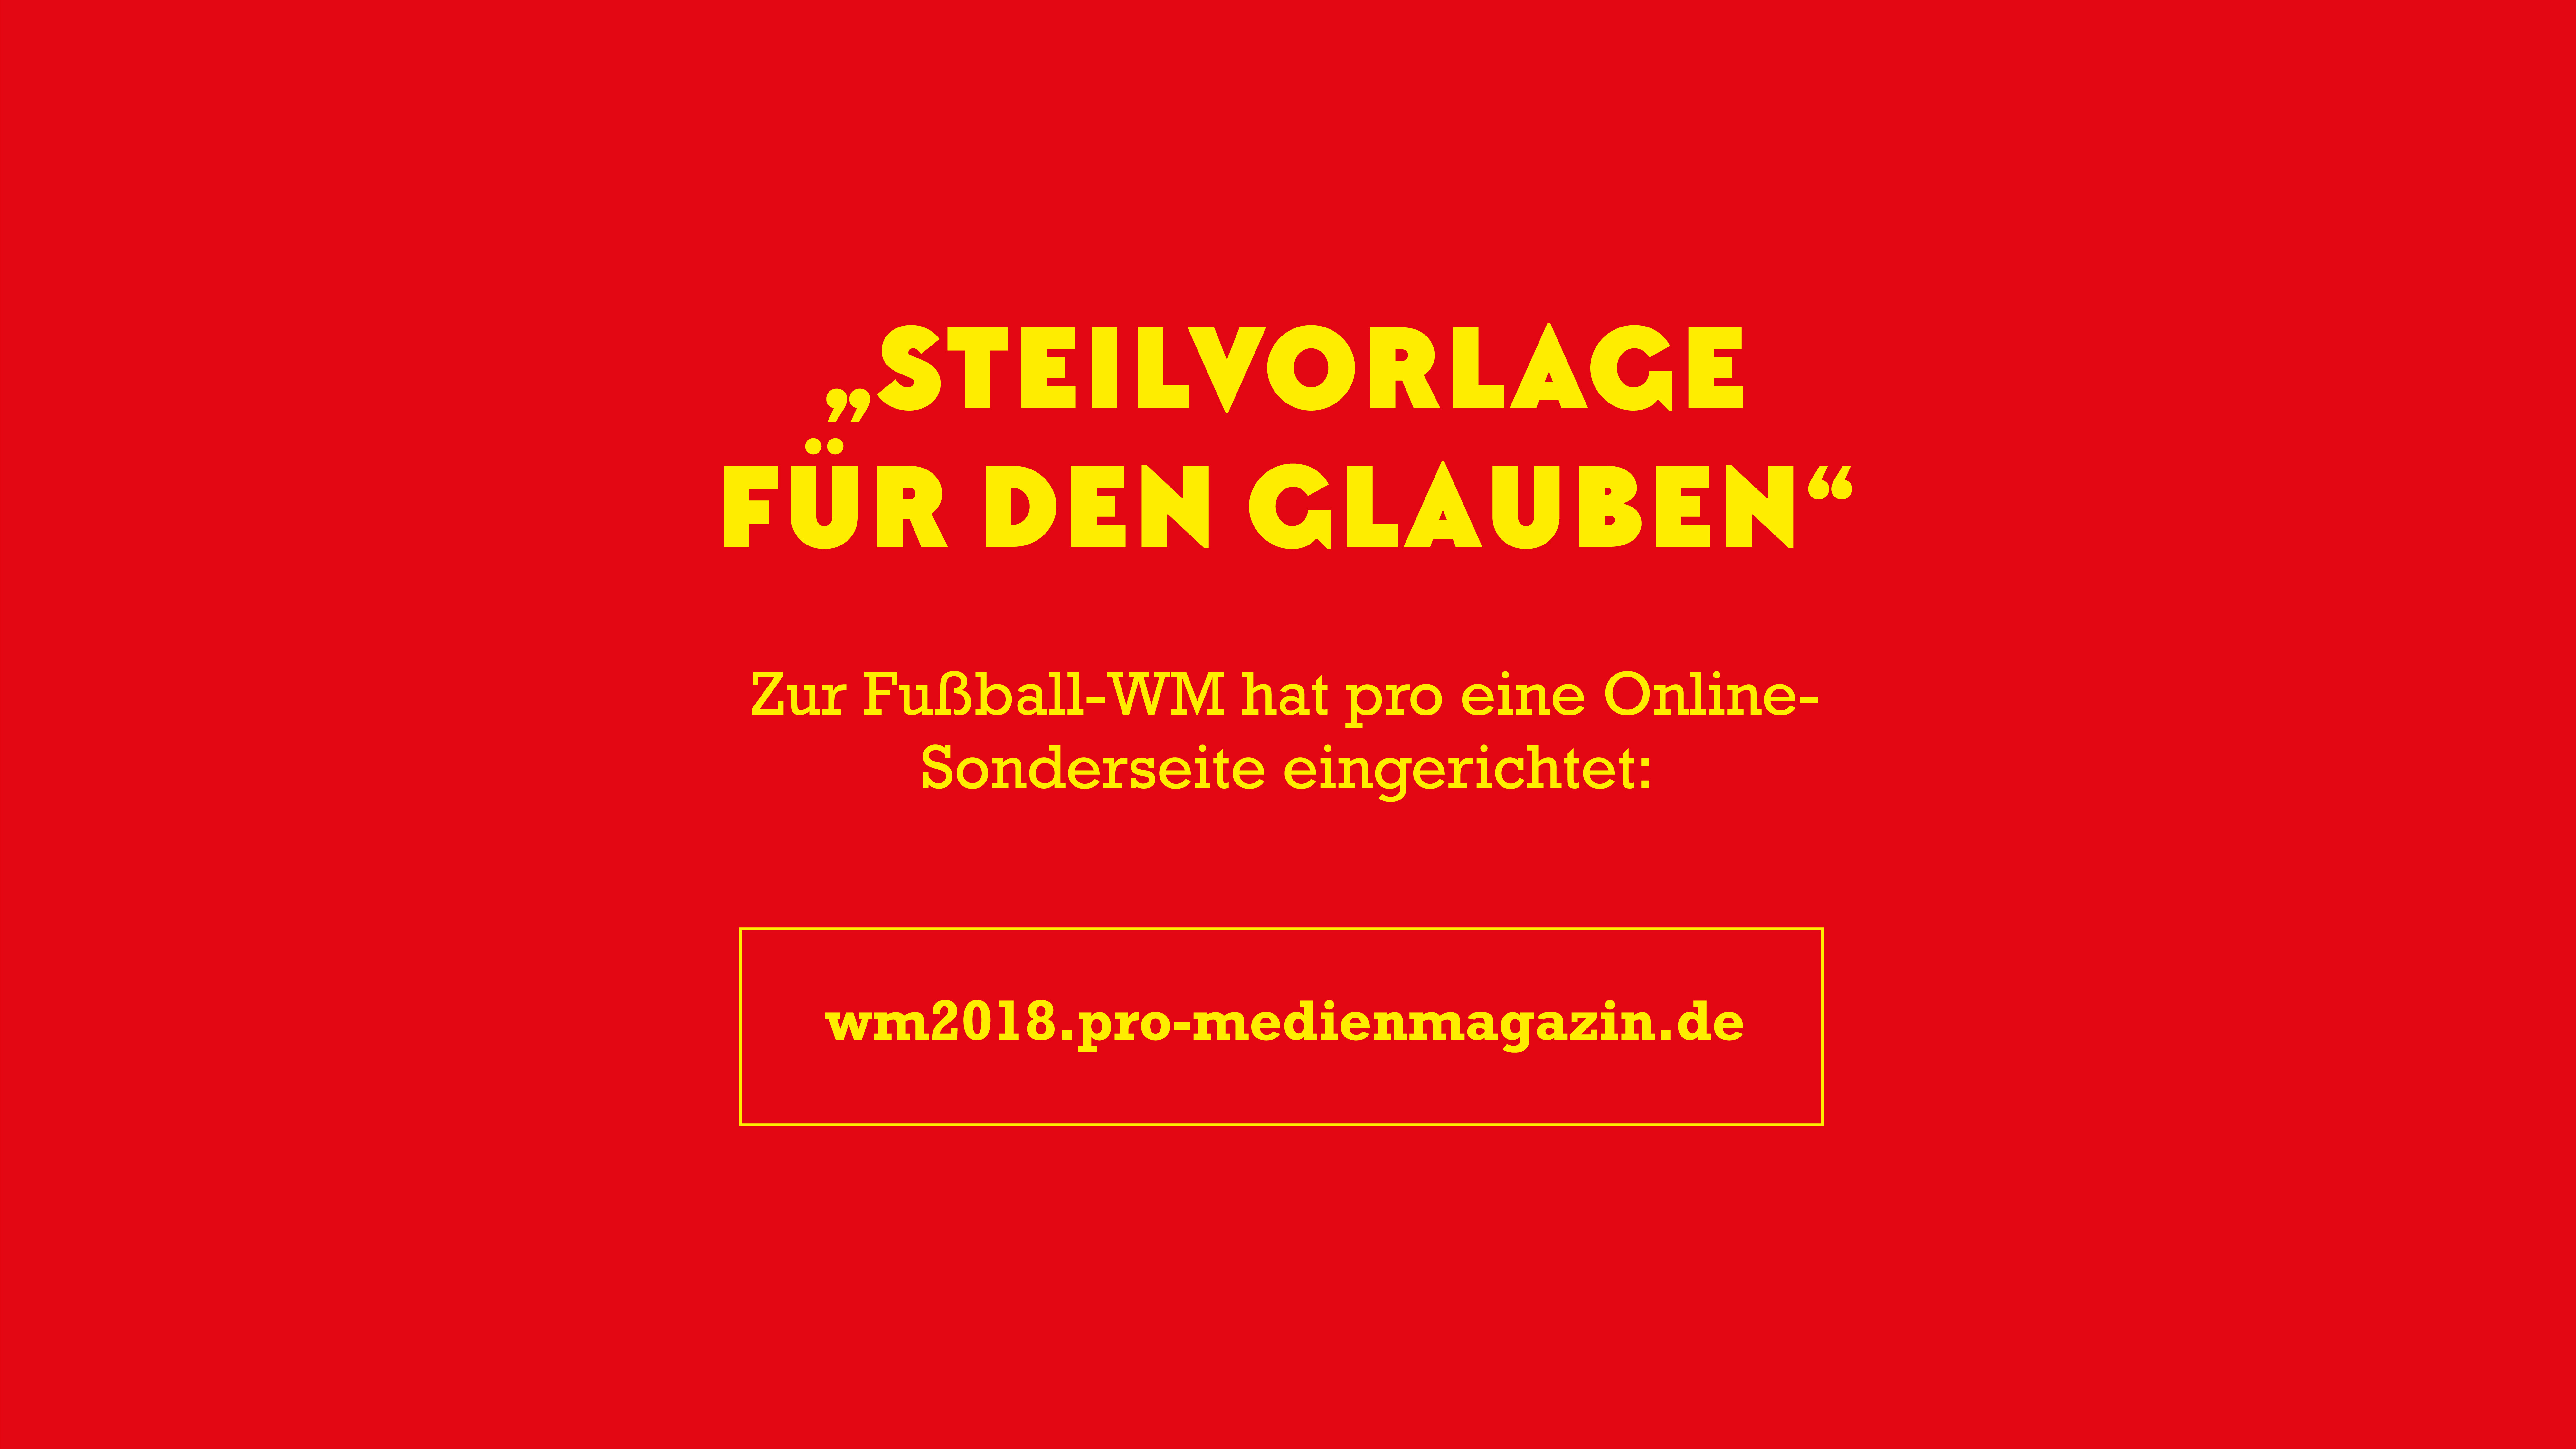 Lesen Sie mehr zum Thema Glaube und Fußball auf unserer Sonderseite wm2018.pro-medienmagazin.de